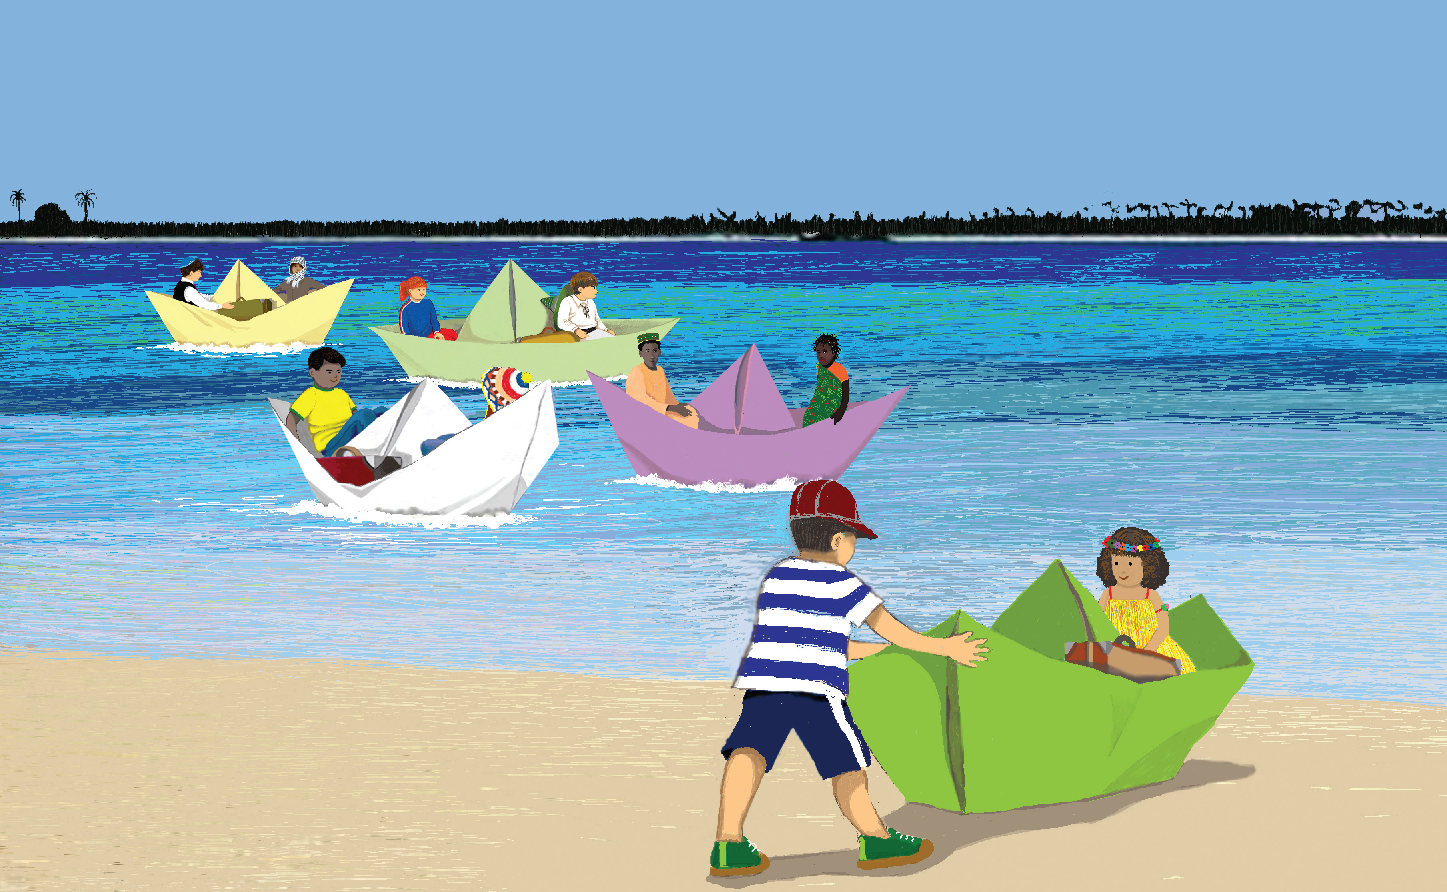 Crianças na praia em barcos de papel. Página 20 do livro Terra mãe. Imagem ilustrativa texto meio ambiente.